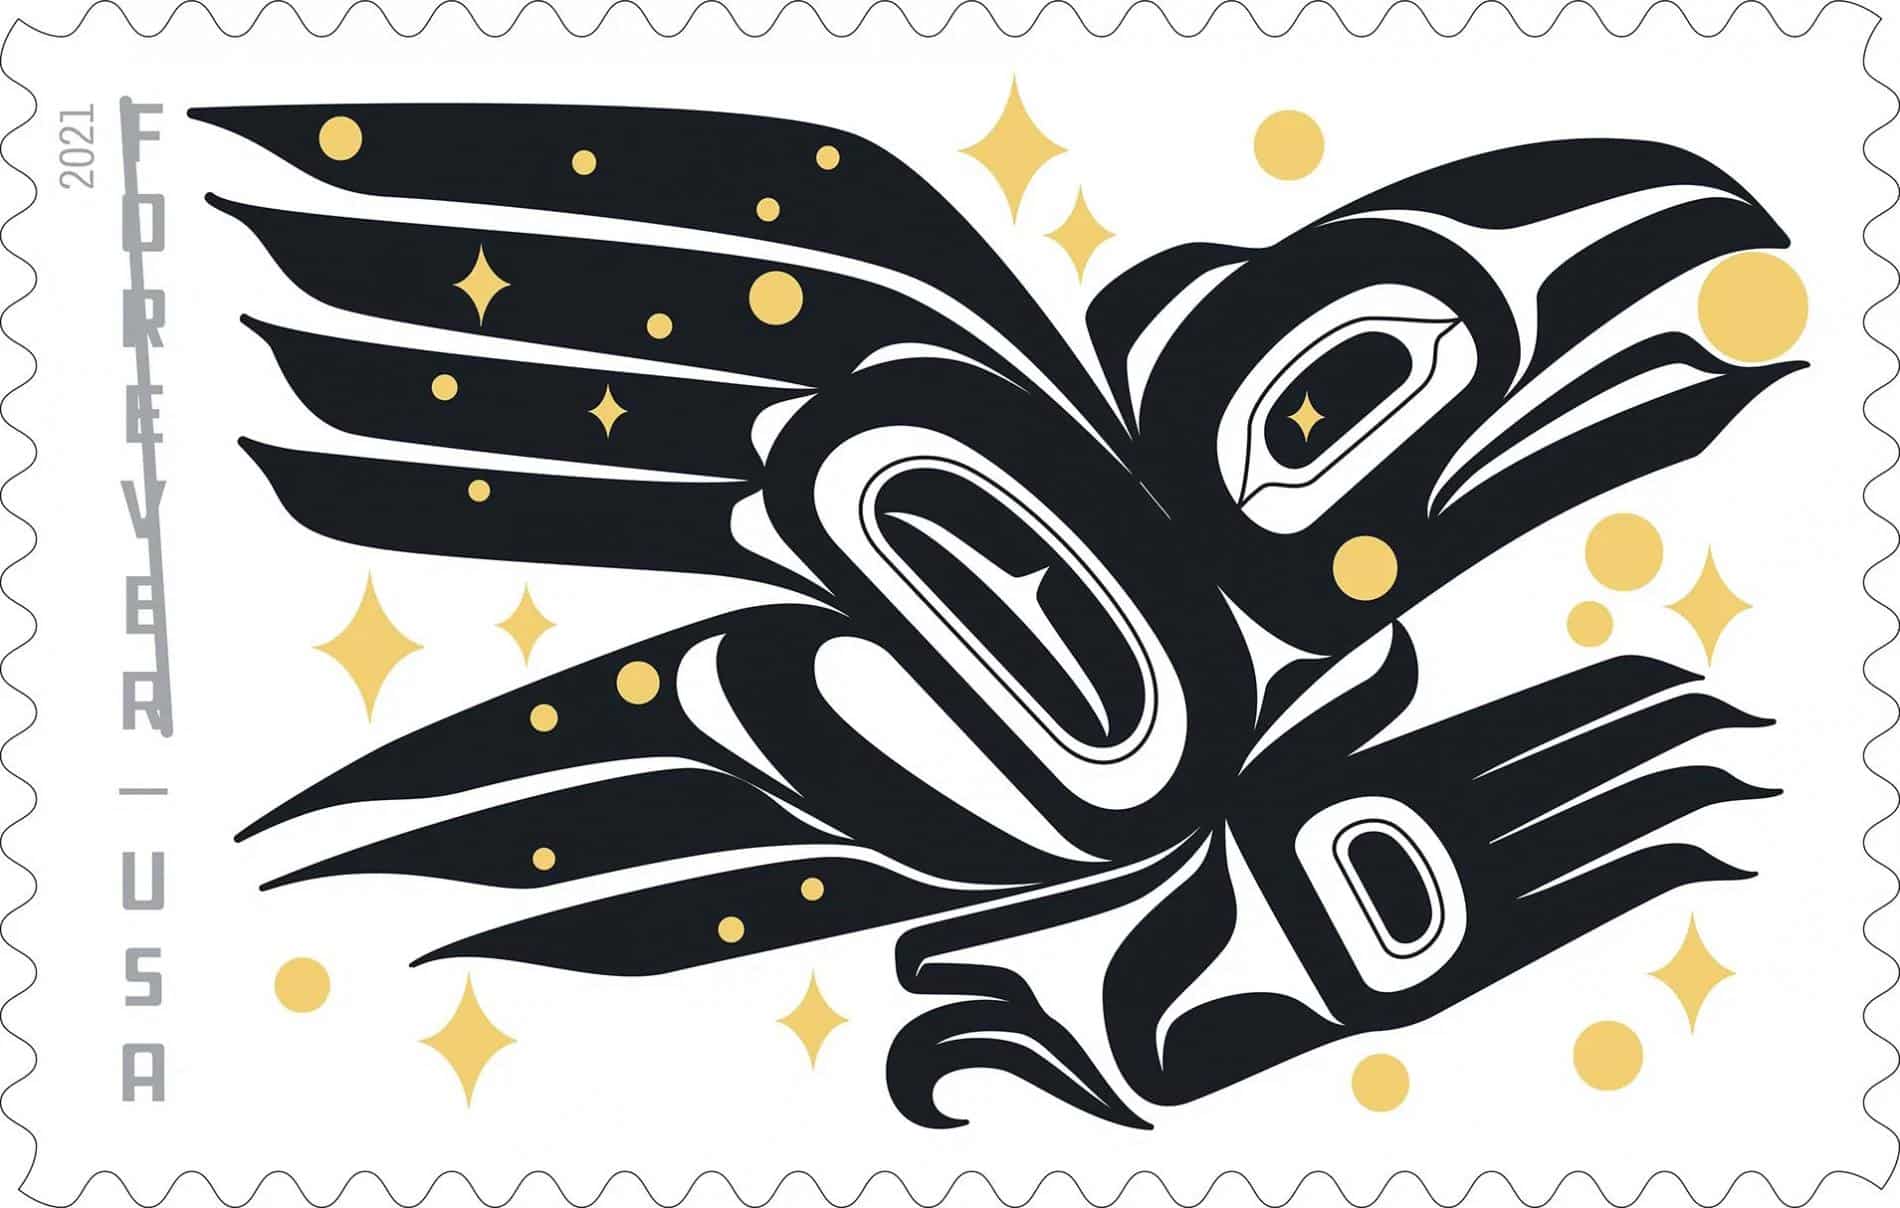 sello postal estados unidos diseño indigena